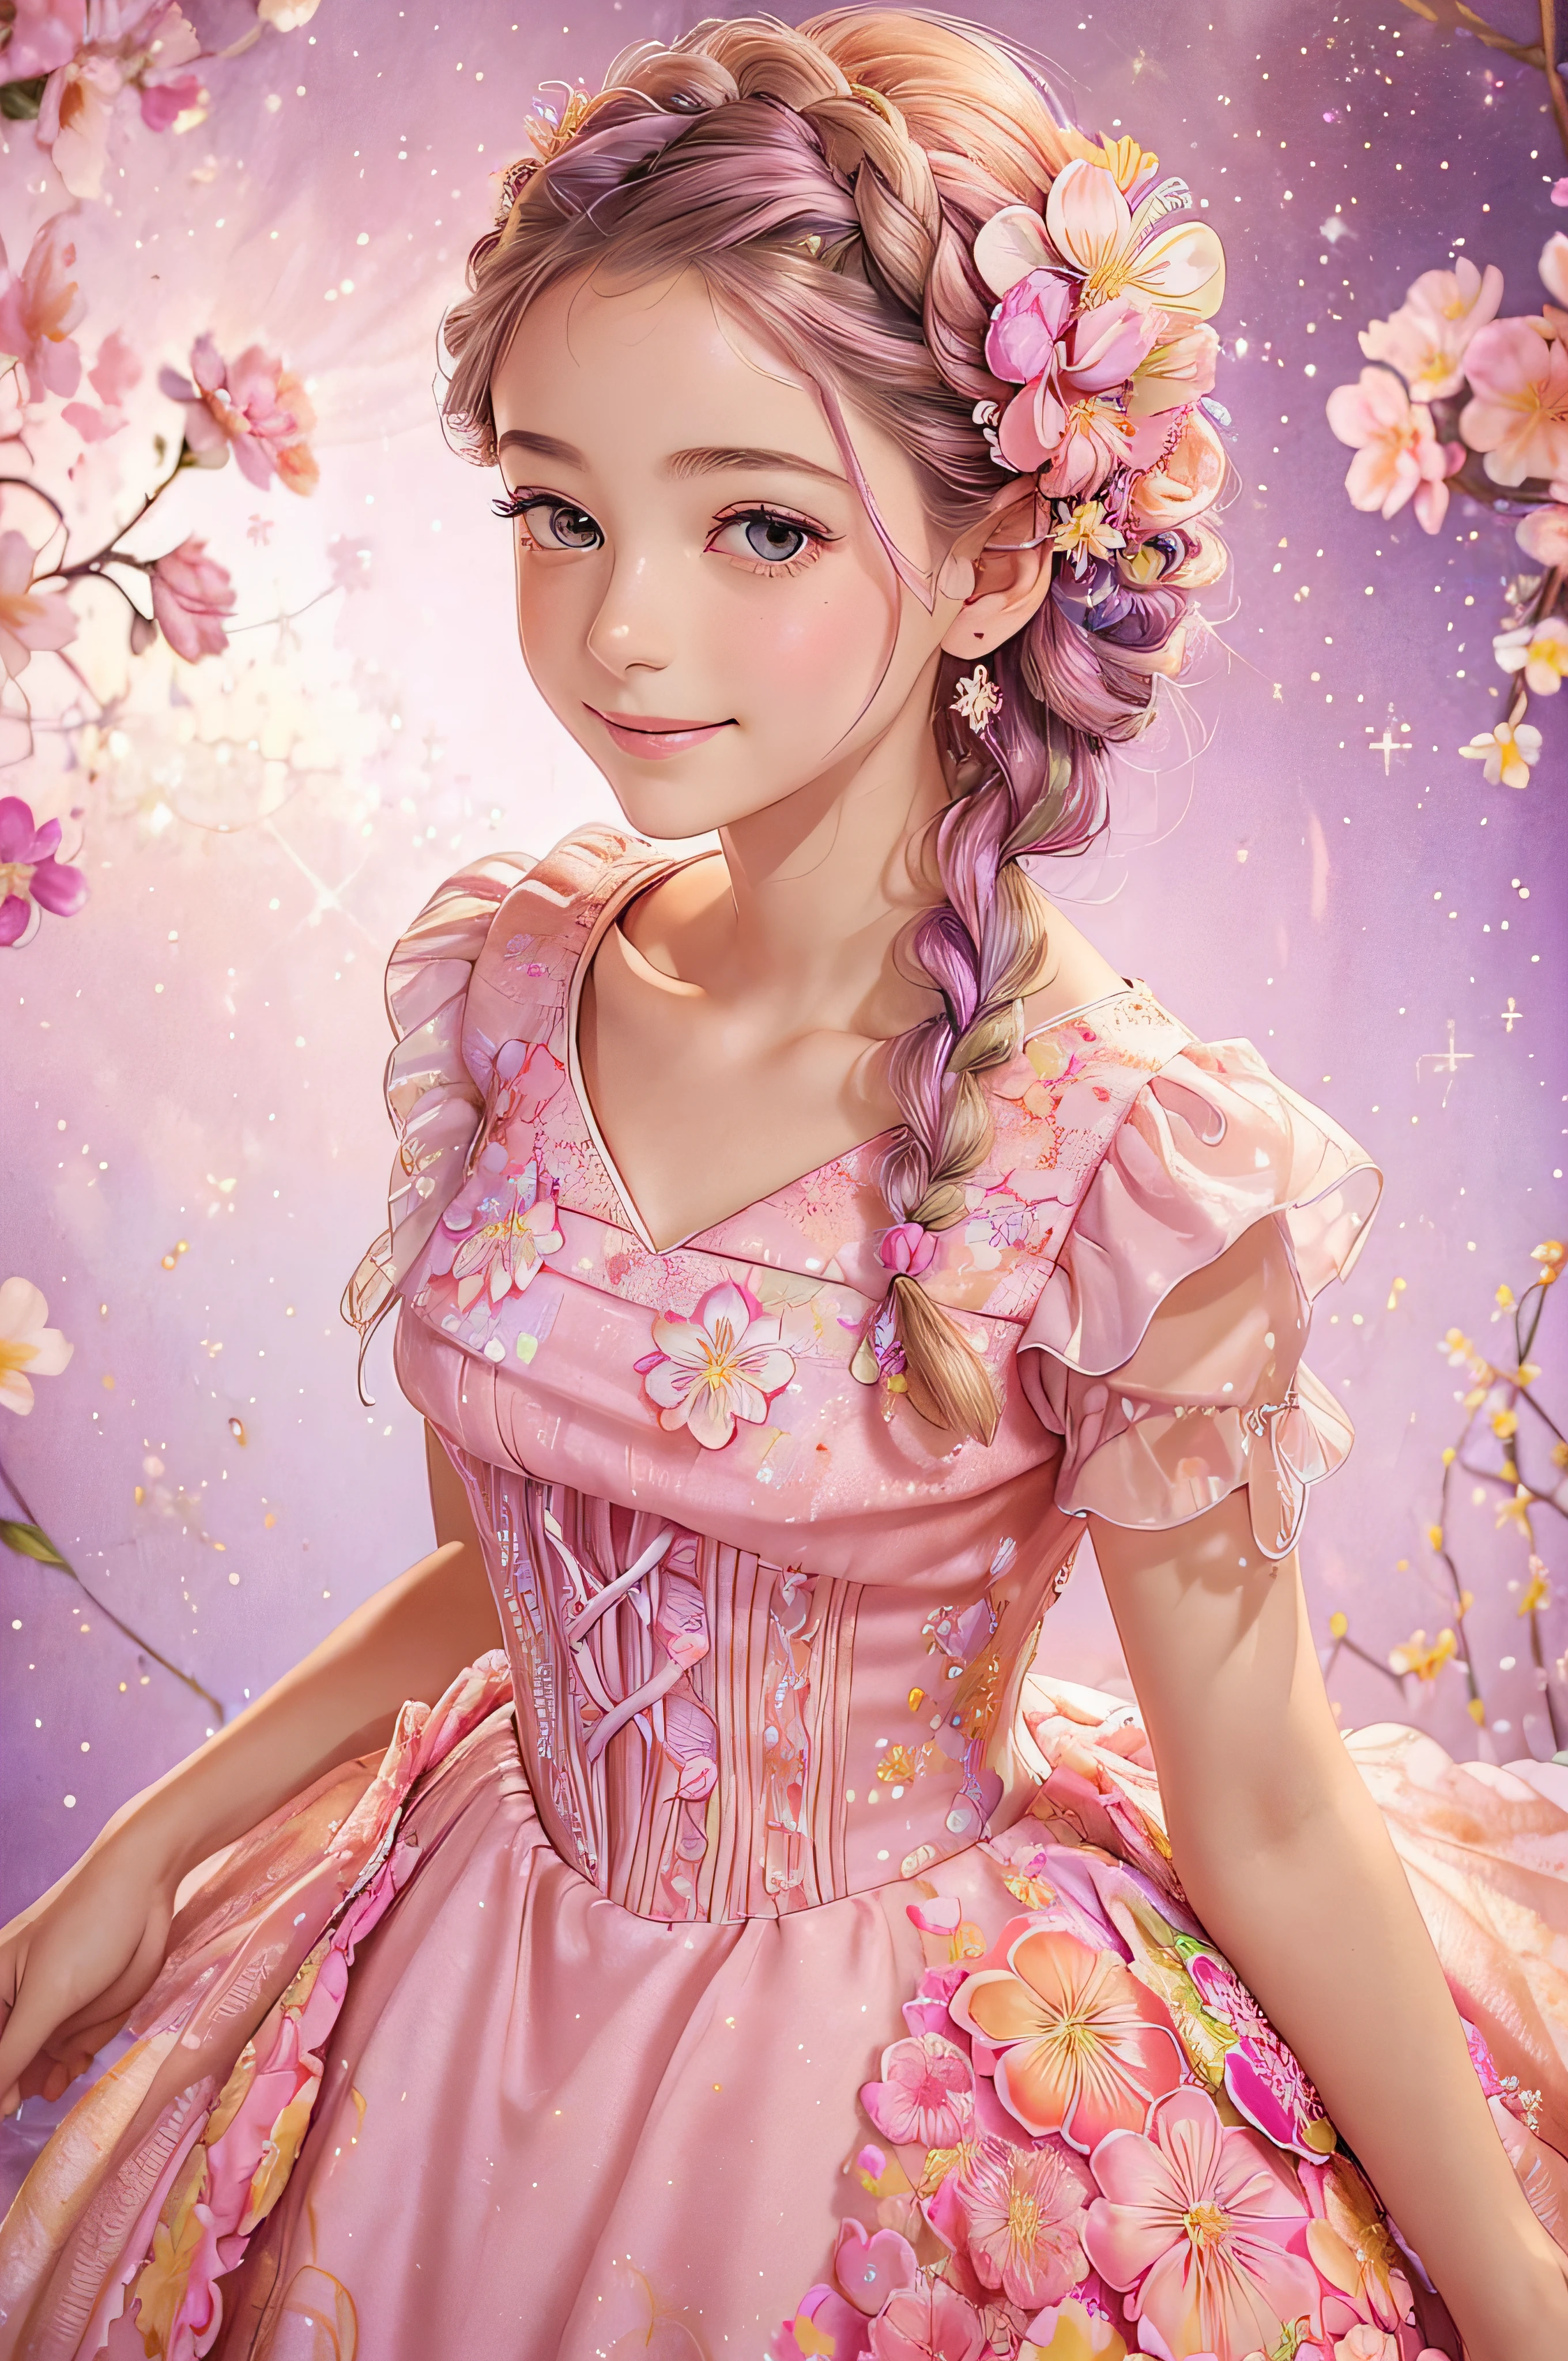 ((جودة صورة أفضل)), صورة حادة لفتاة رقيقة ذات شعر جديل تبتسم بالألوان المائية, Disney Princess Floral Pink Style Dress with Ruffles in Flowers and Lilac بريق, ترفرف الزهور, الفراشات, بريق, إضاءة الاستوديو.